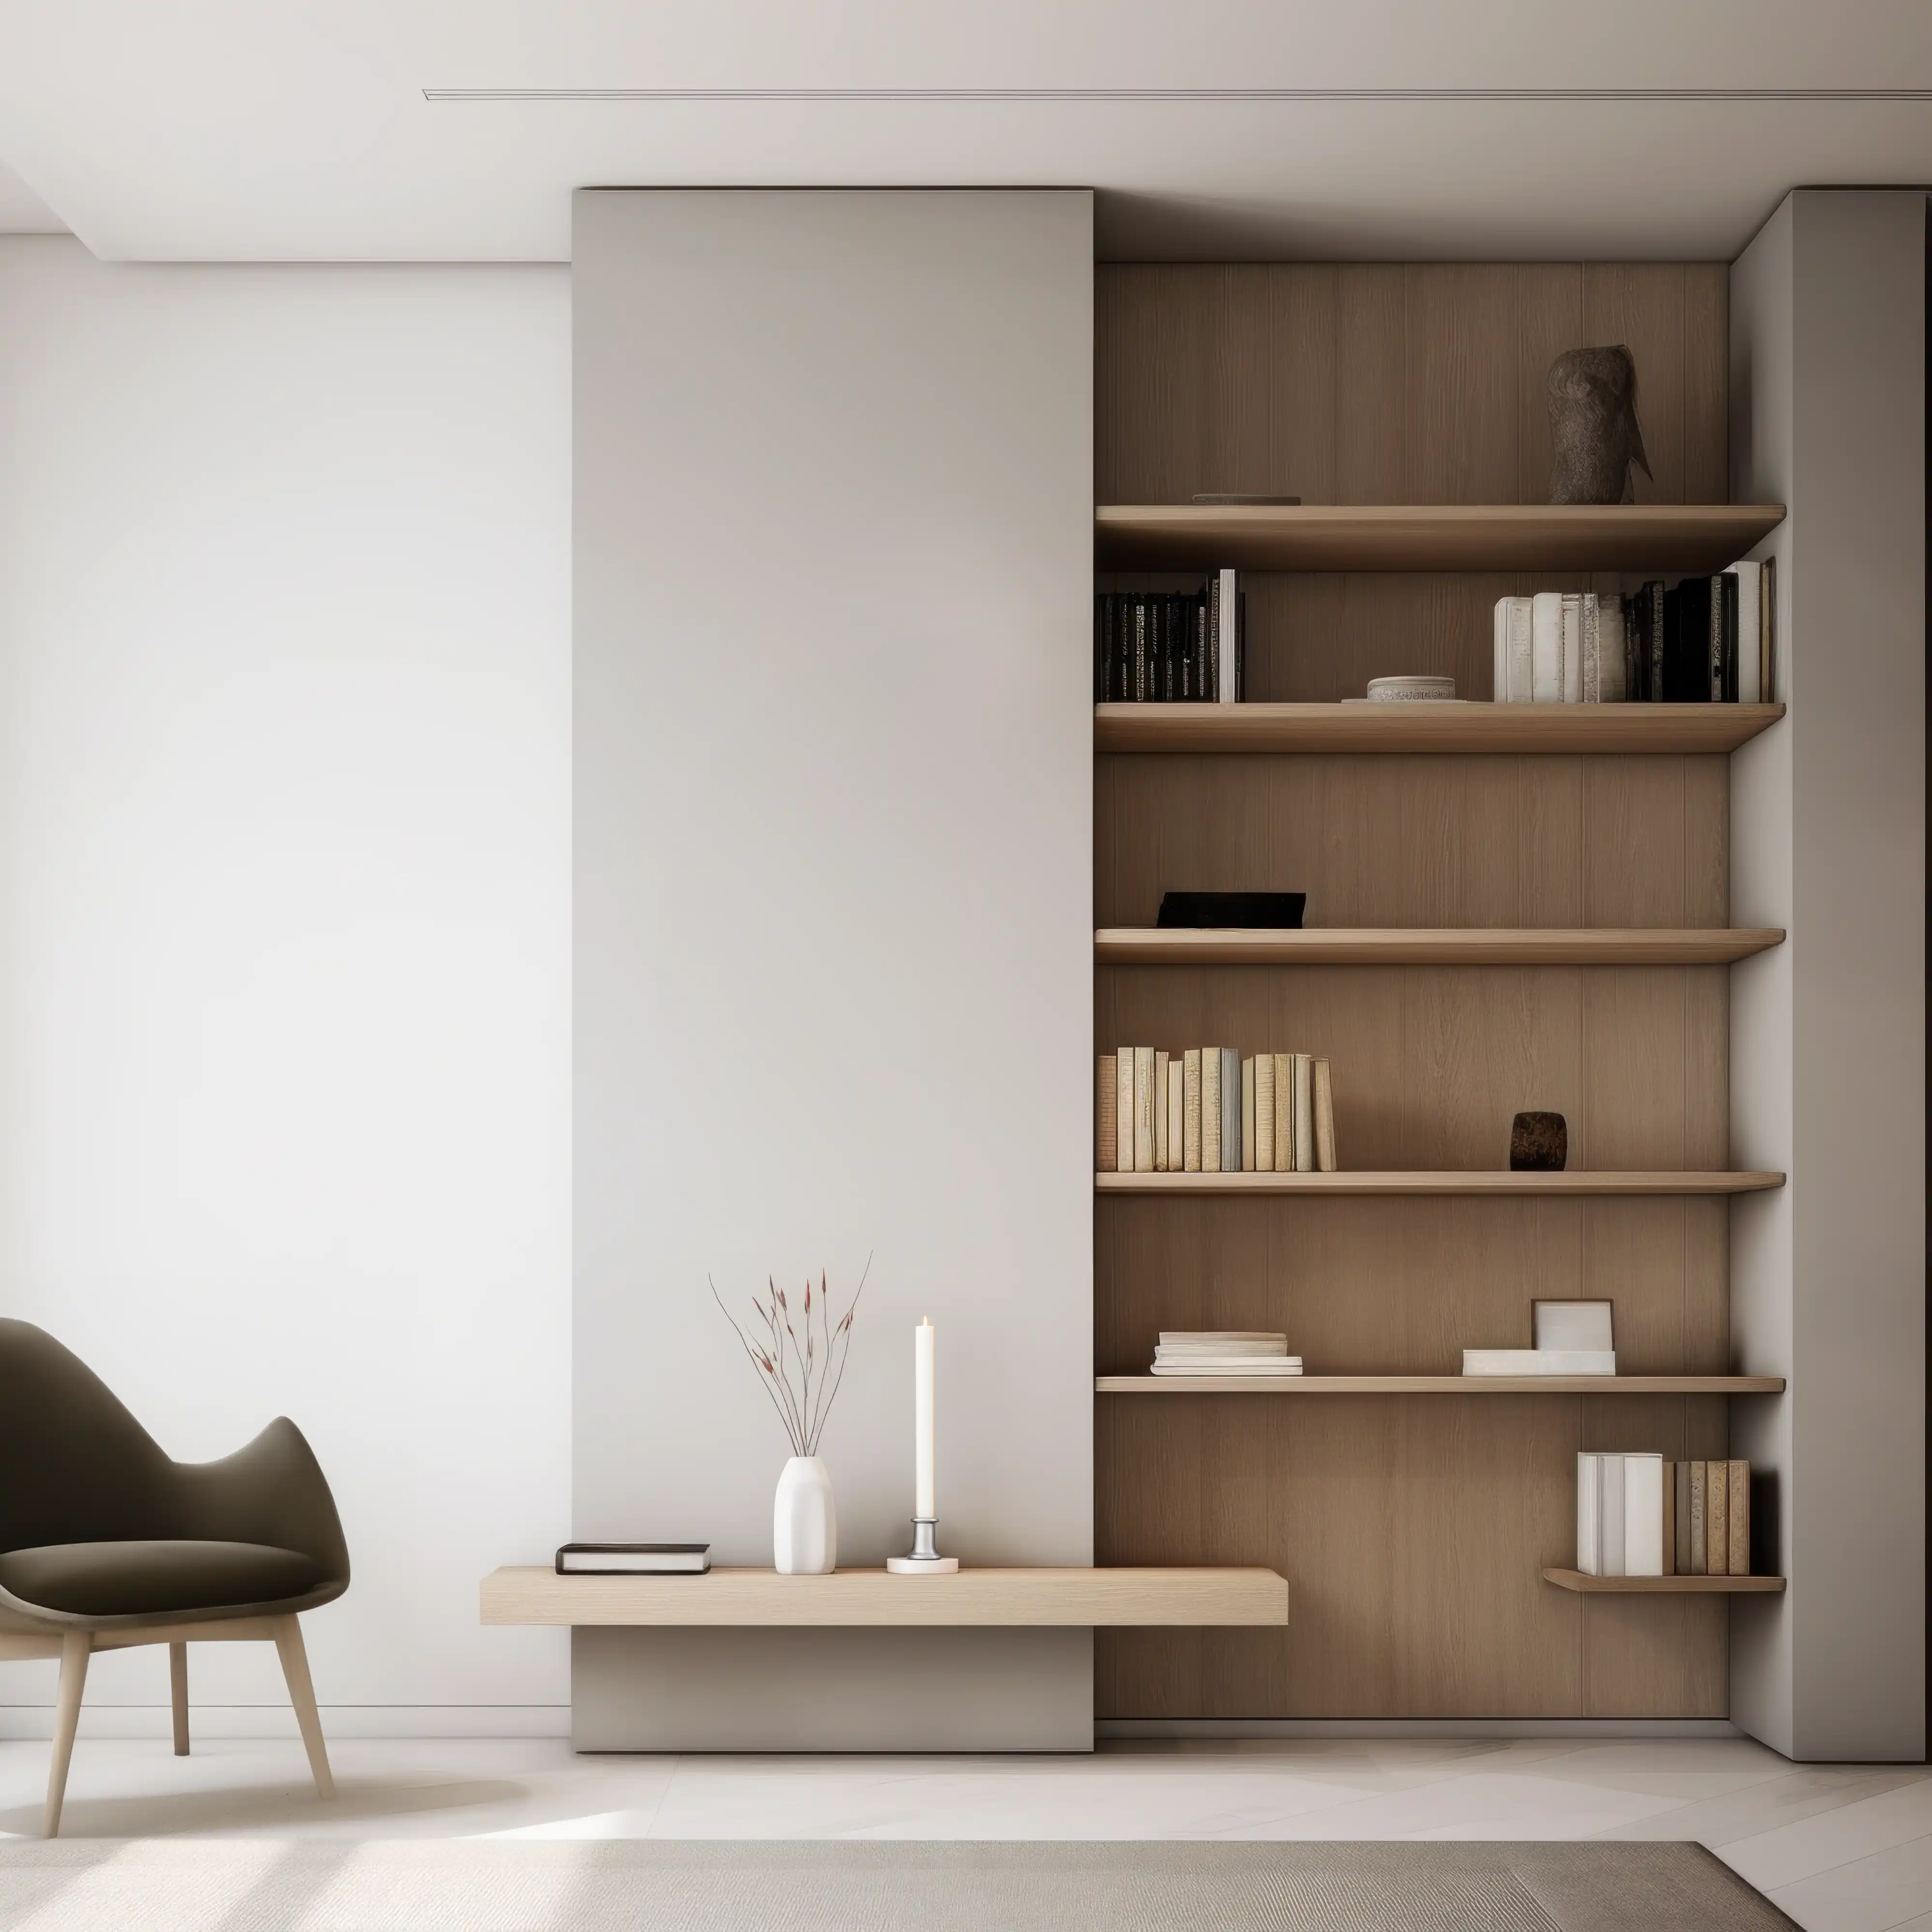 Salon minimaliste avec des étagères épurées et des meubles modernes contre un mur blanc immaculé, intérieur signé Sarah Brown Design